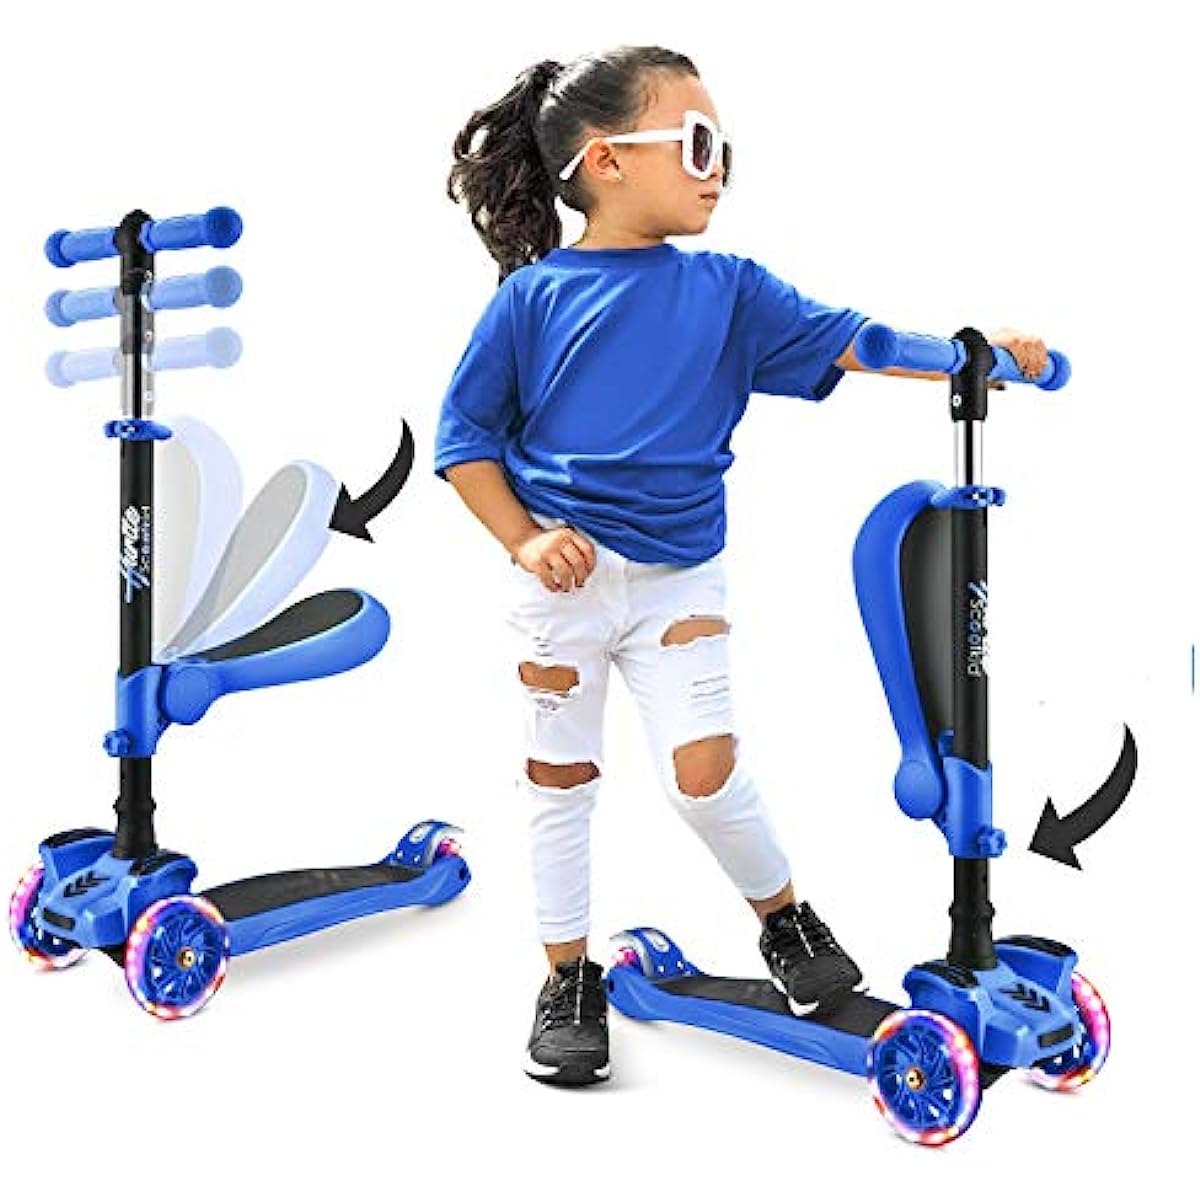 3 wielen scooter voor kinderen standaard / peuters speelgoed opvouwbare steppen met in hoogte verstelbare antislip dek knipperende wielverlichting voor jongens / meisjes 2-12 jaar oude Hurtle